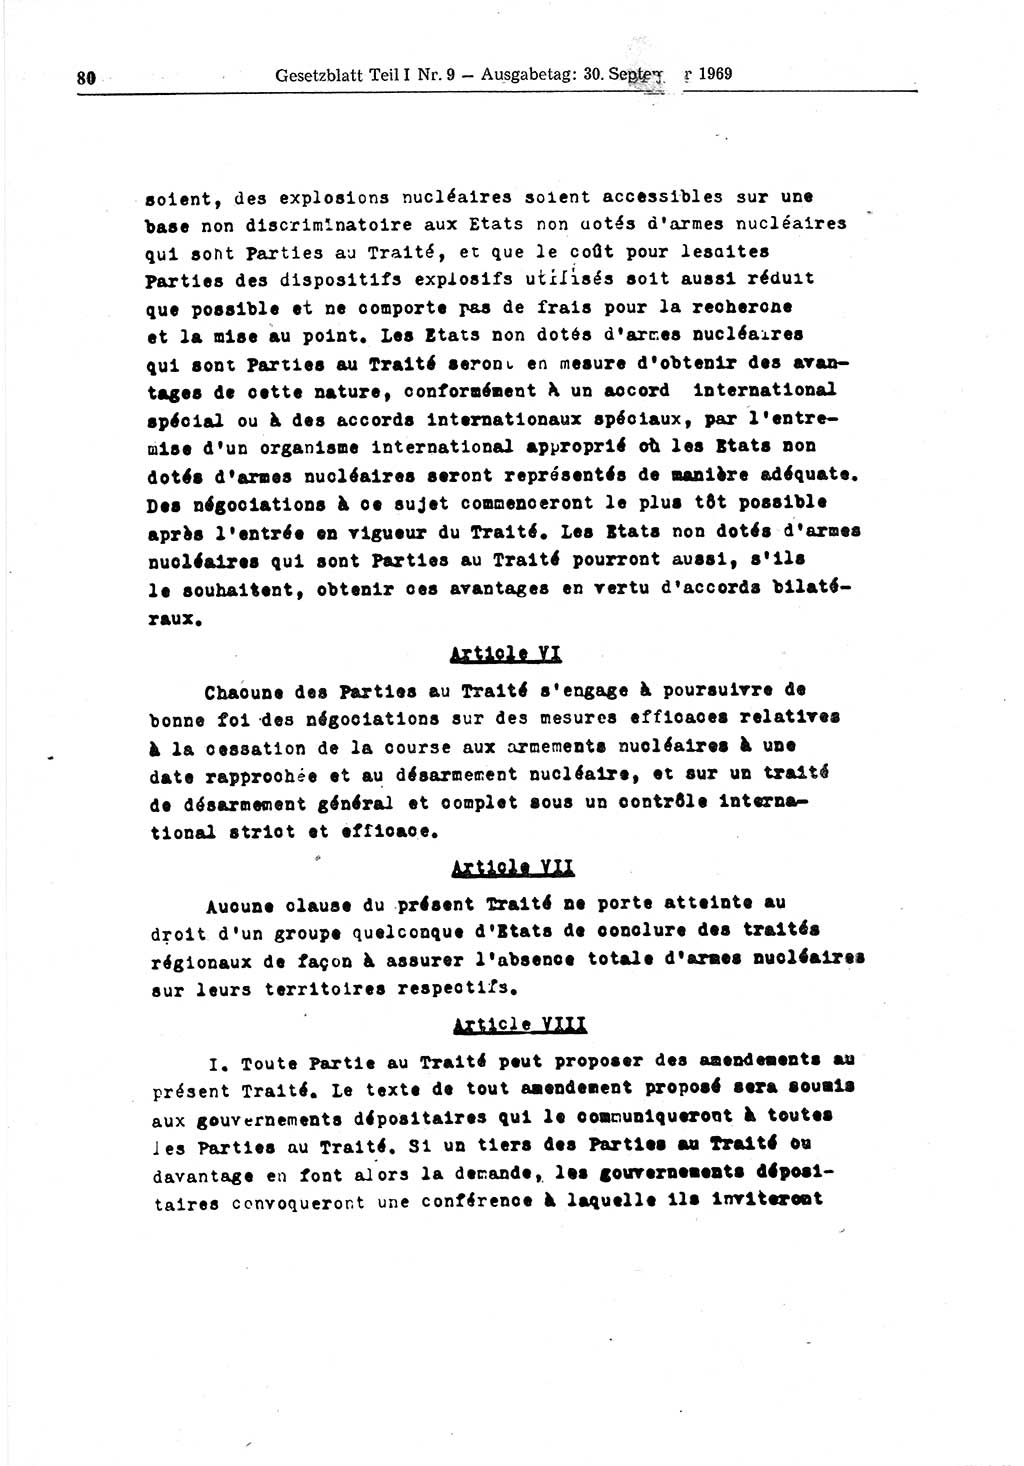 Gesetzblatt (GBl.) der Deutschen Demokratischen Republik (DDR) Teil Ⅰ 1969, Seite 80 (GBl. DDR Ⅰ 1969, S. 80)